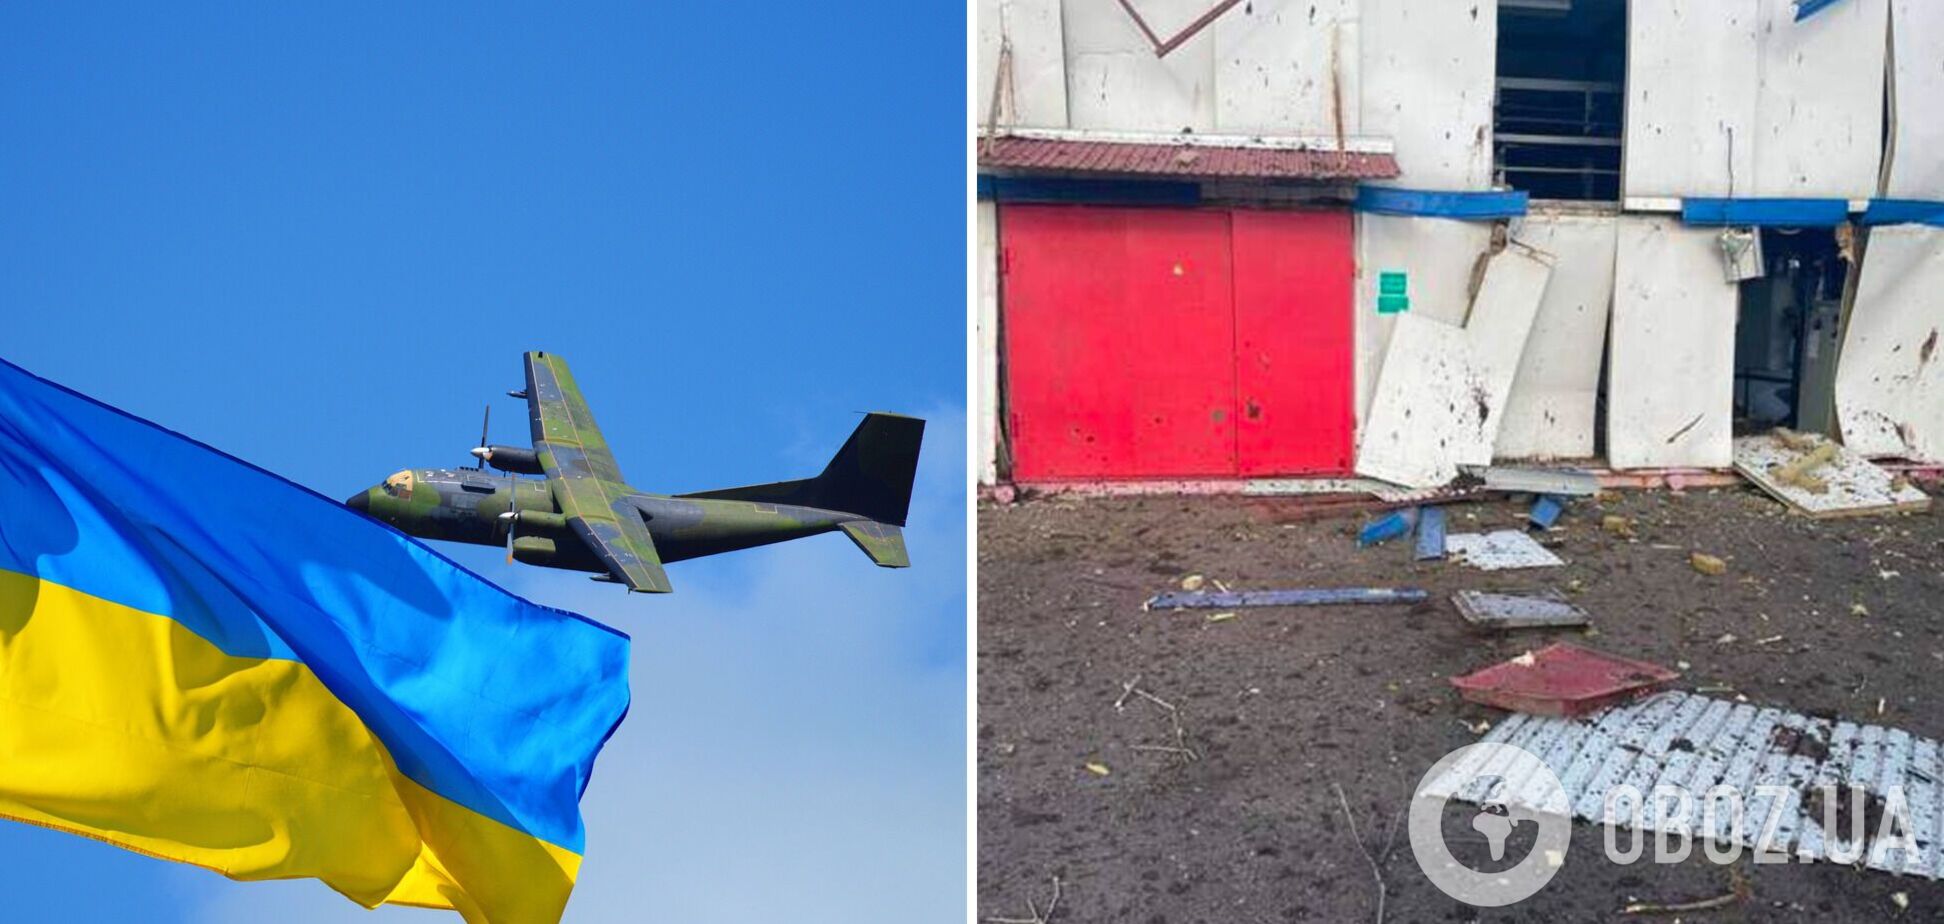 Авиации нет? В России заявили, что обнаружили в небе над Брянской областью 'украинский самолет'